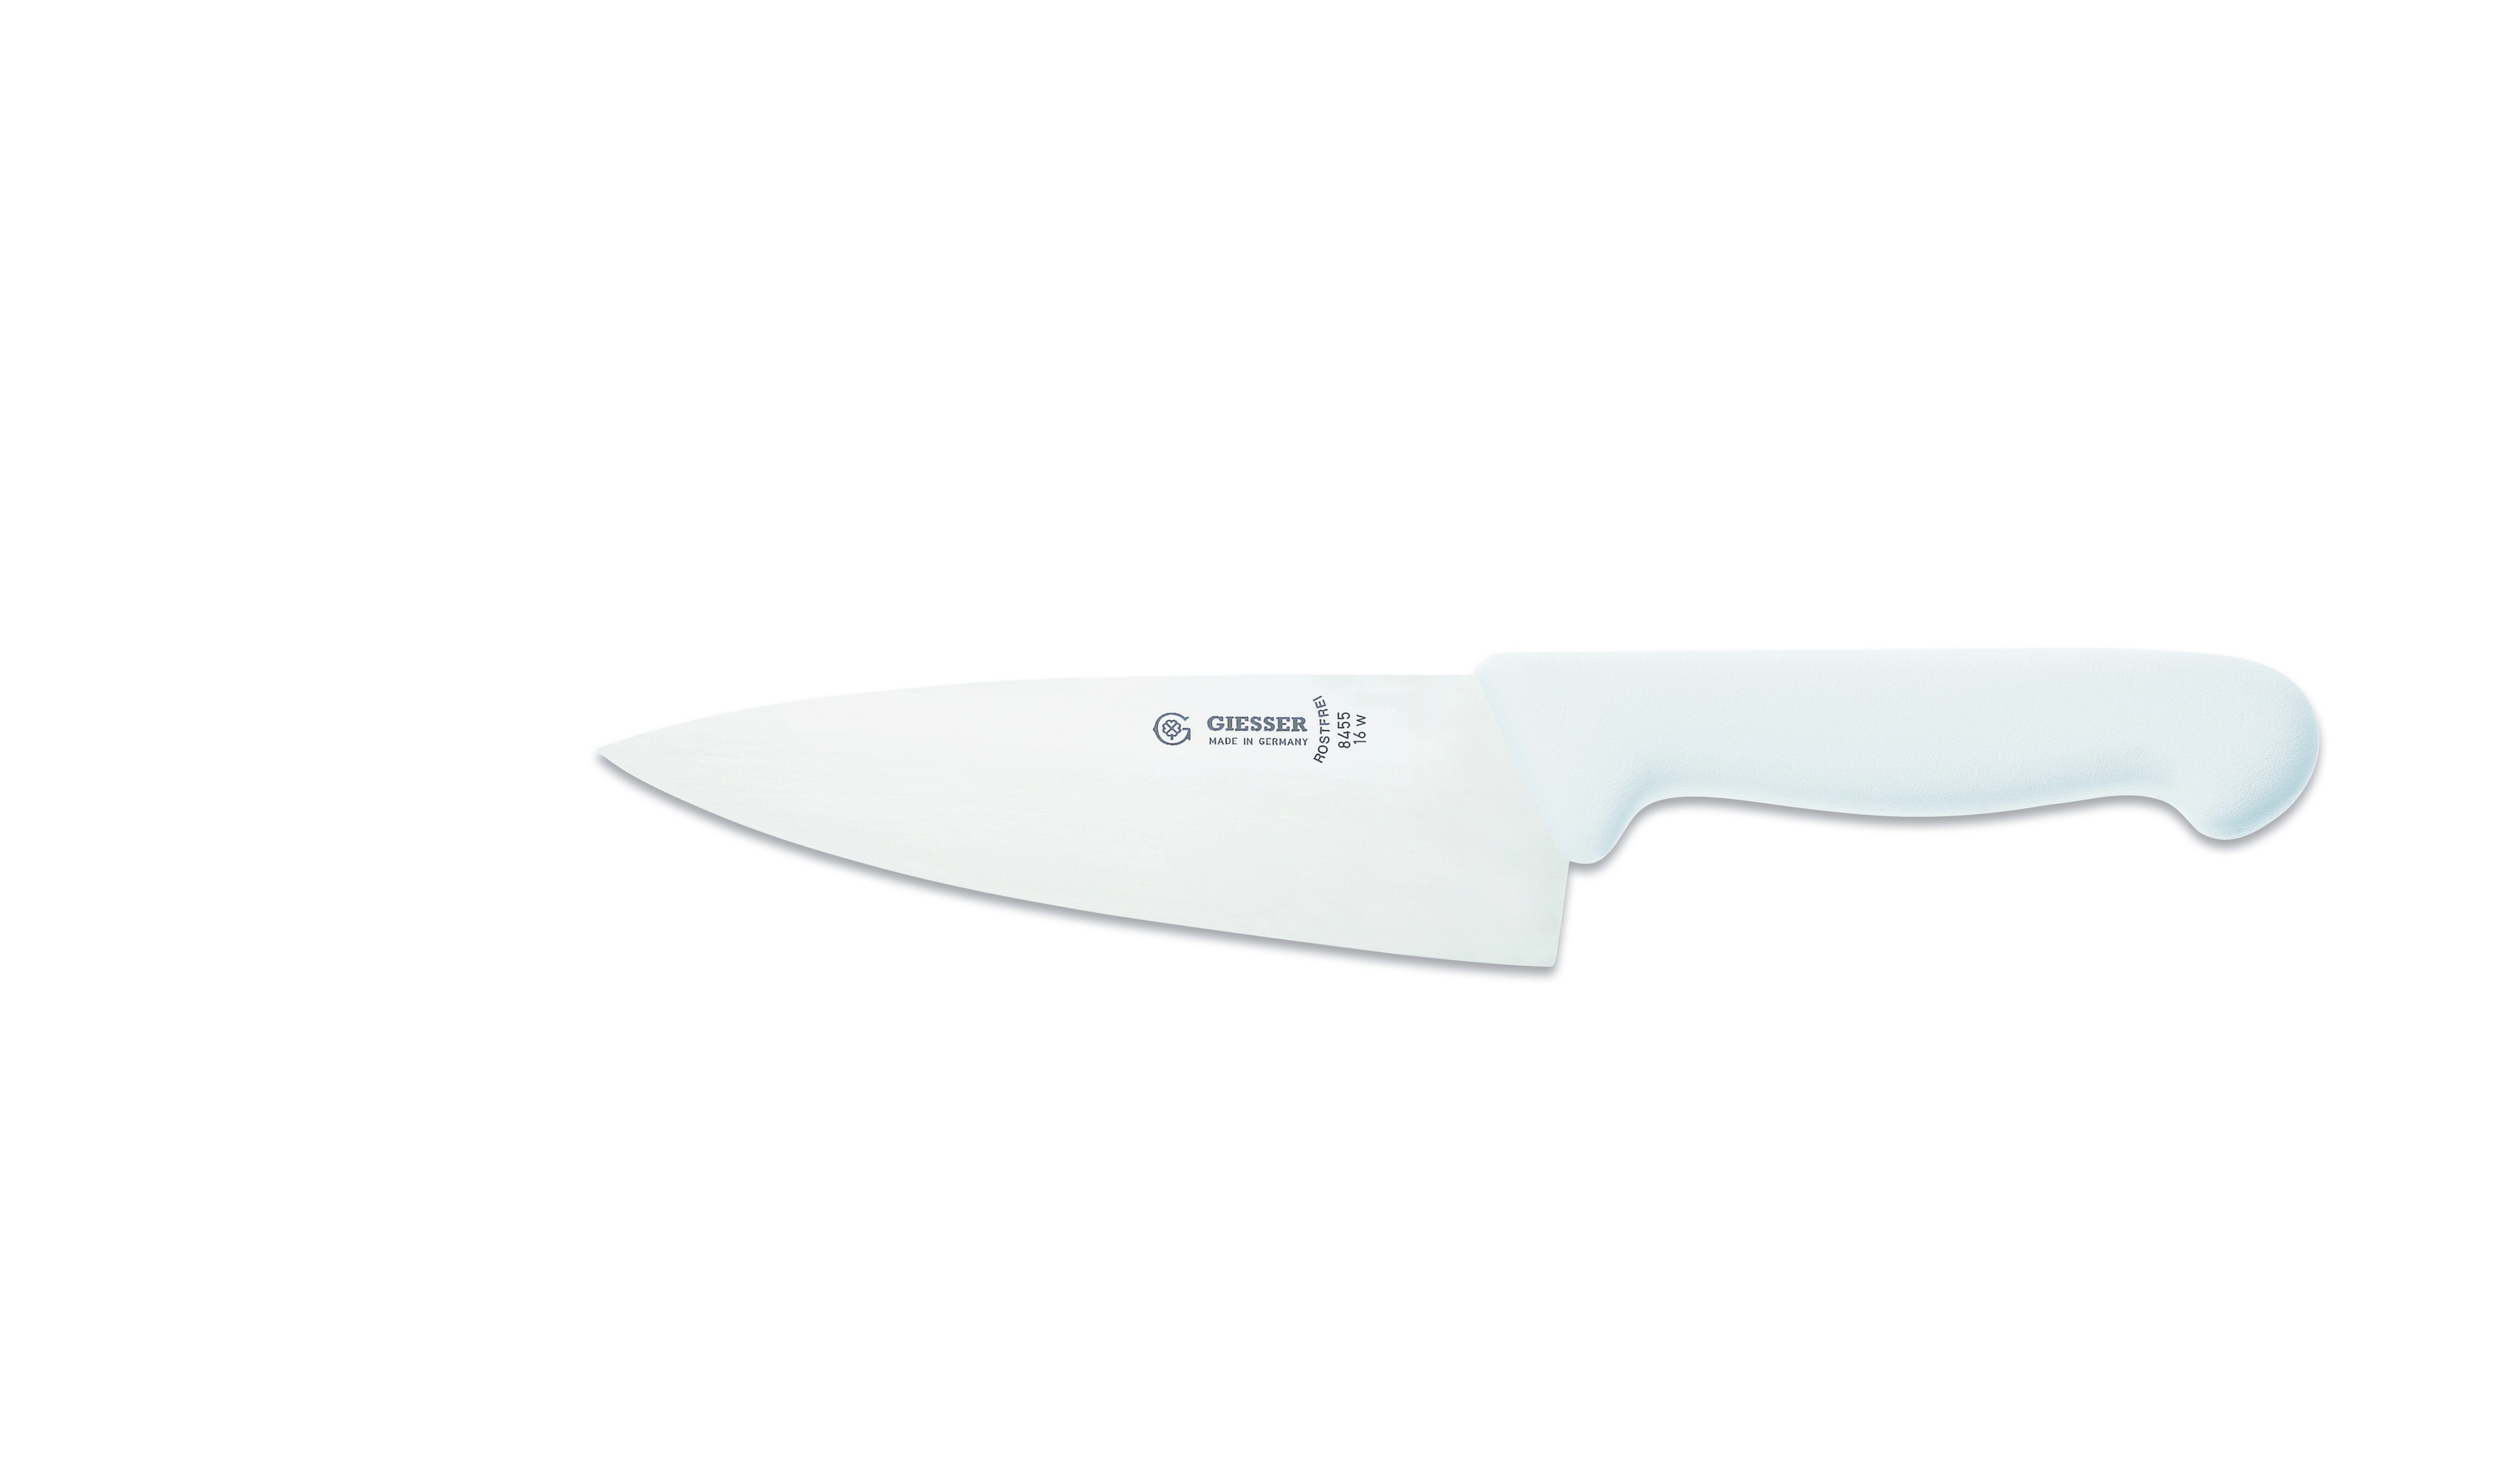 Giesser Messer Kochmesser Küchenmesser breit 8455, Rostfrei, breite Form, scharf, Handabzug, Ideal für jede Küche weiß